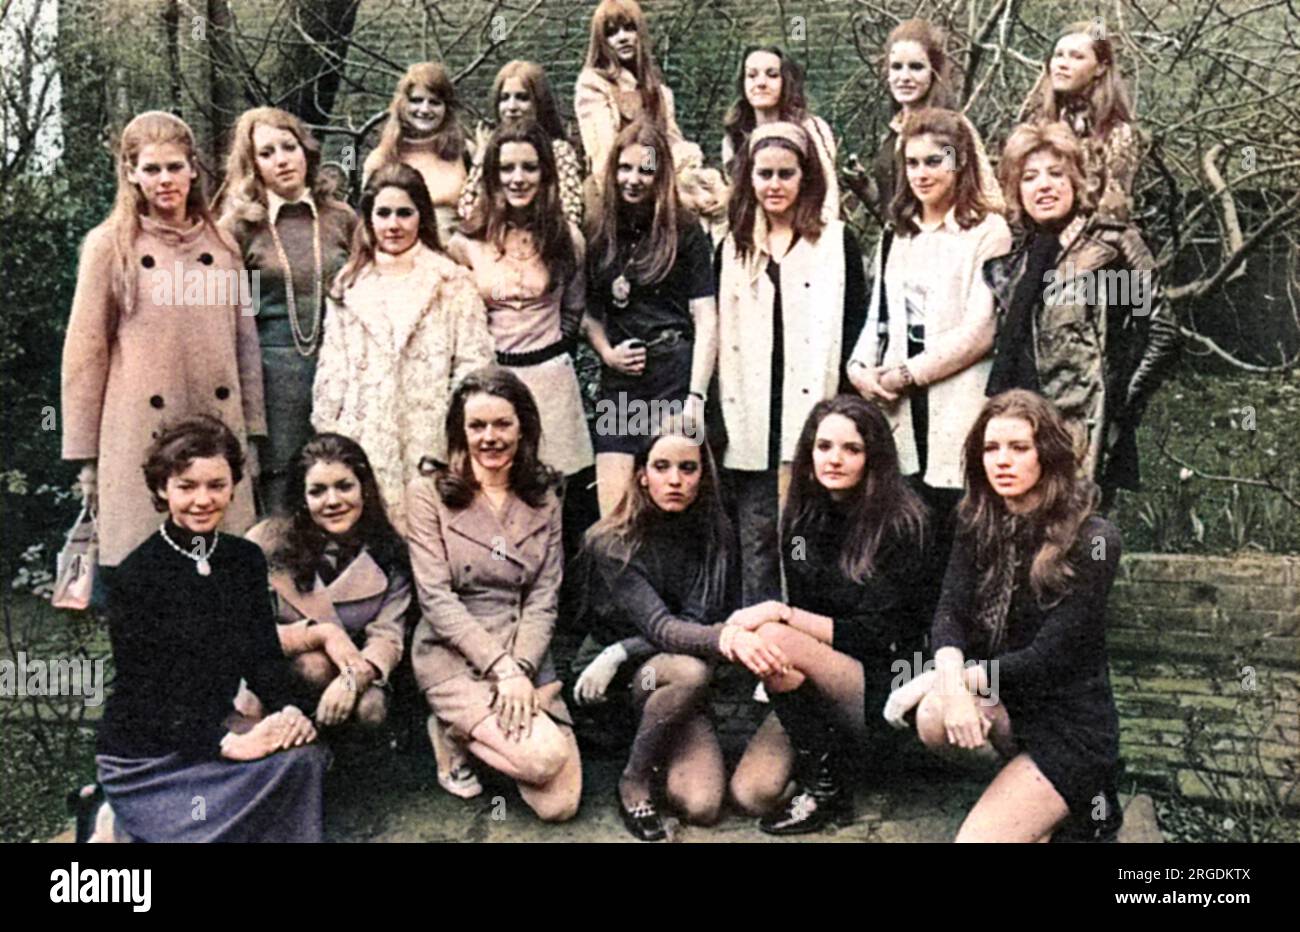 Un groupe de vingt filles choisies parmi 200 espoirs pour participer à l'événement d'ouverture de la saison londonienne, le Berkeley Dress Show (anciennement le Berkeley Debutante Dress Show) qui aura lieu en avril 1970. Banque D'Images